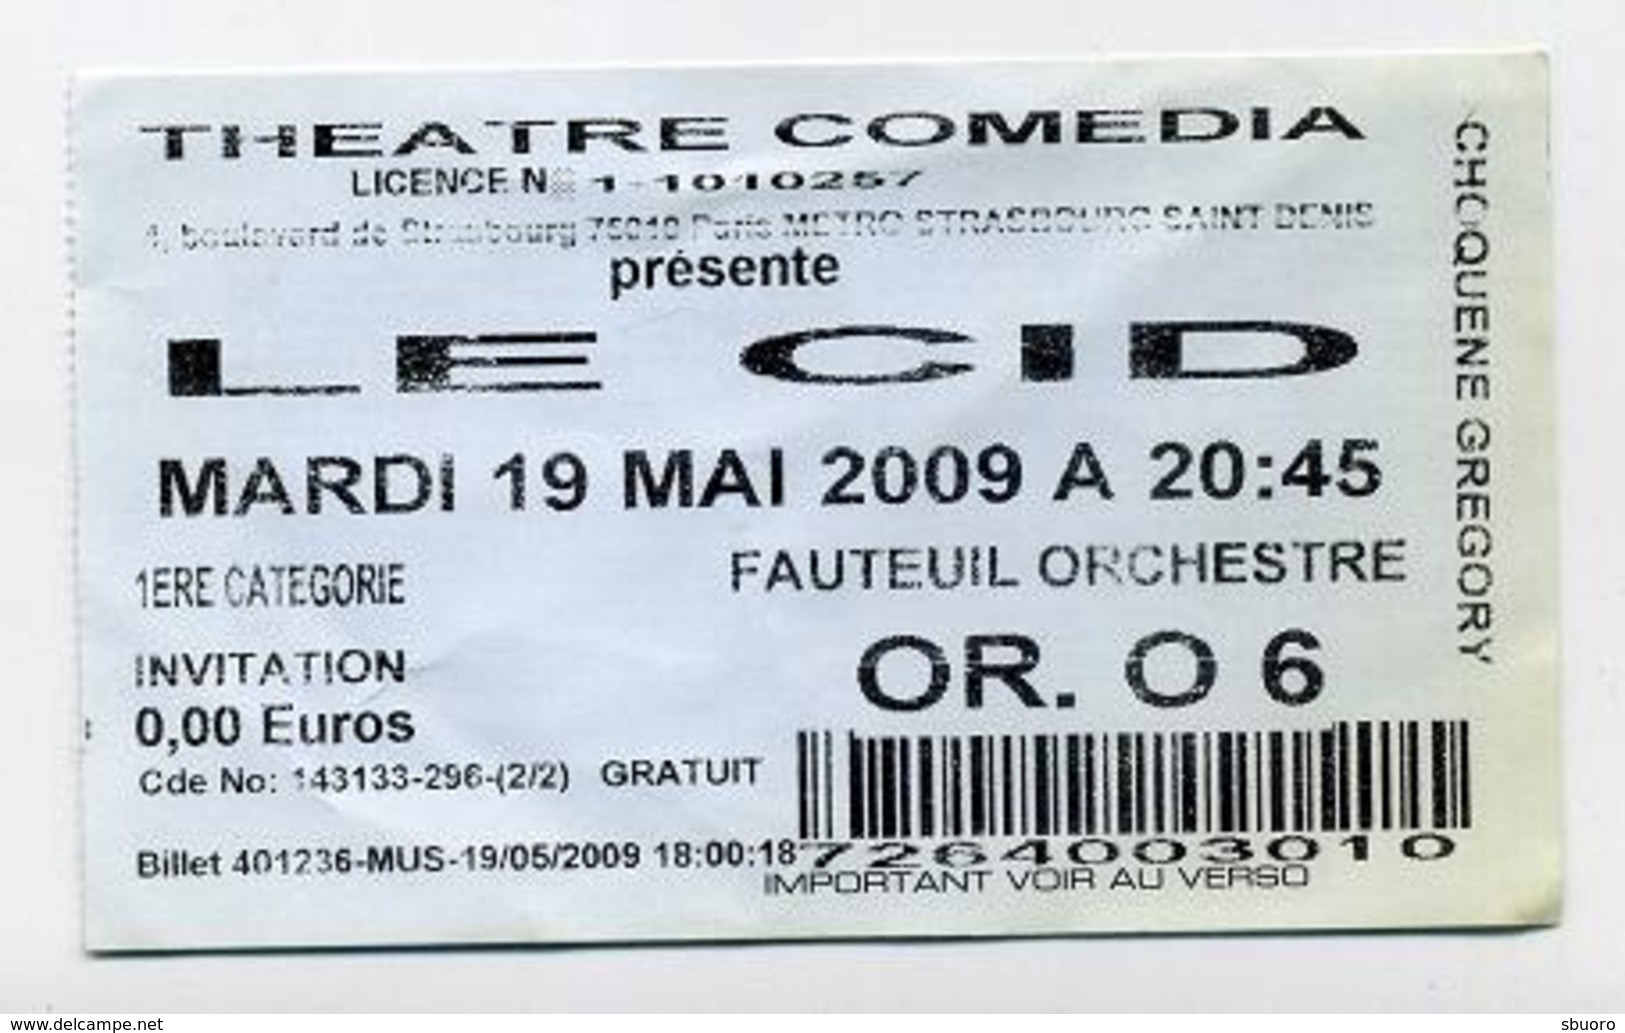 Le Cid - Théâtre Comedia, Paris - Mai 2009 - Tickets D'entrée